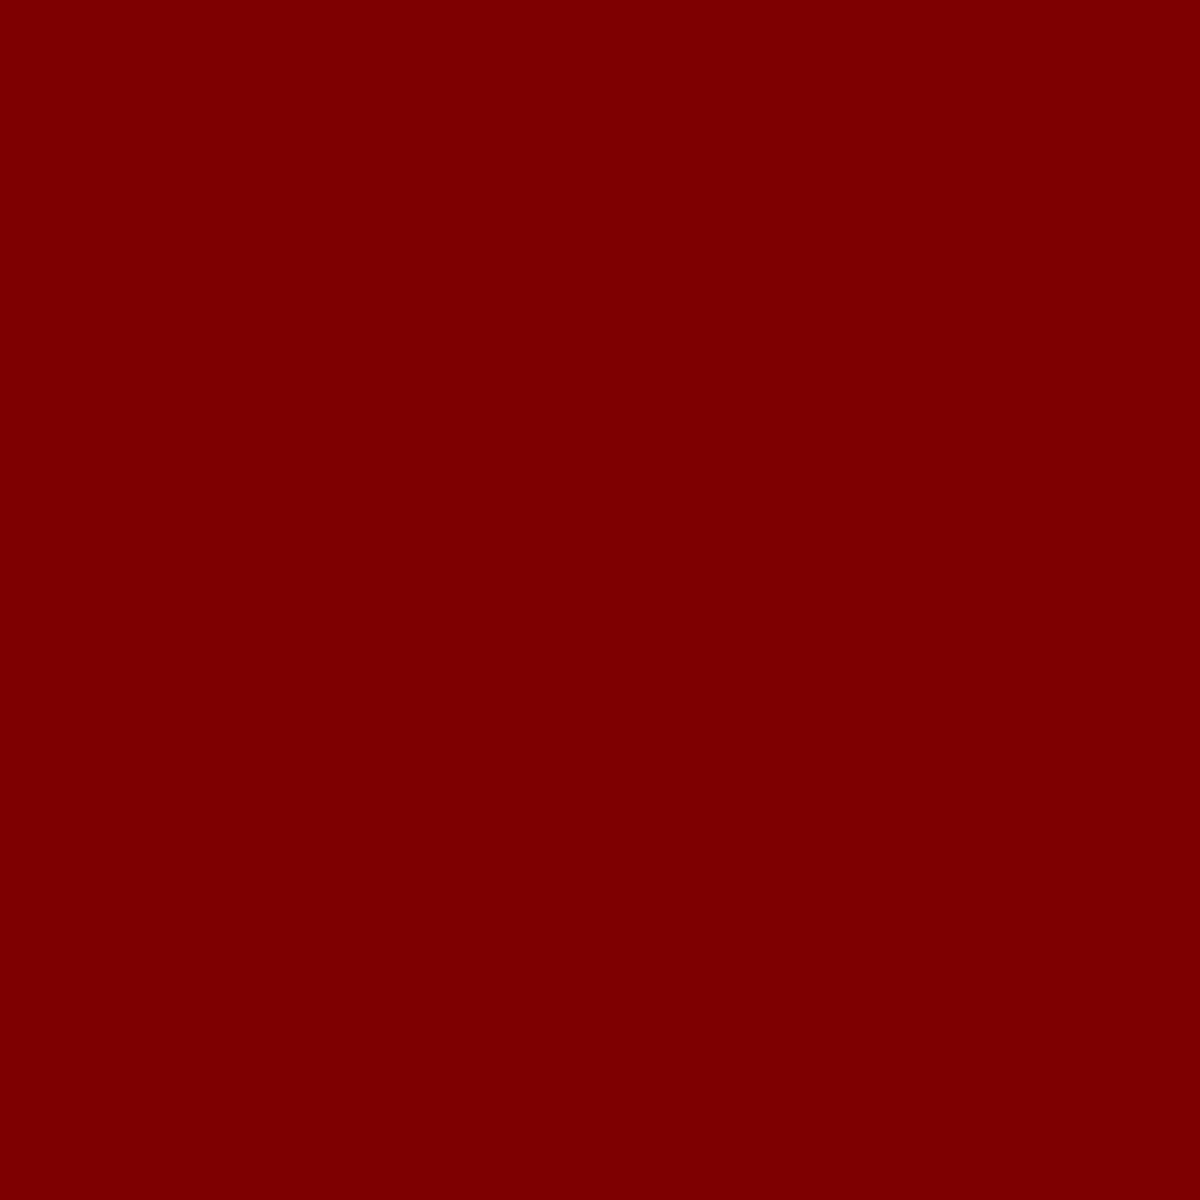 pellicola retroriflettente 3M Scotchlite 580-82E rosso rubino 1,22 m x 22,8 m